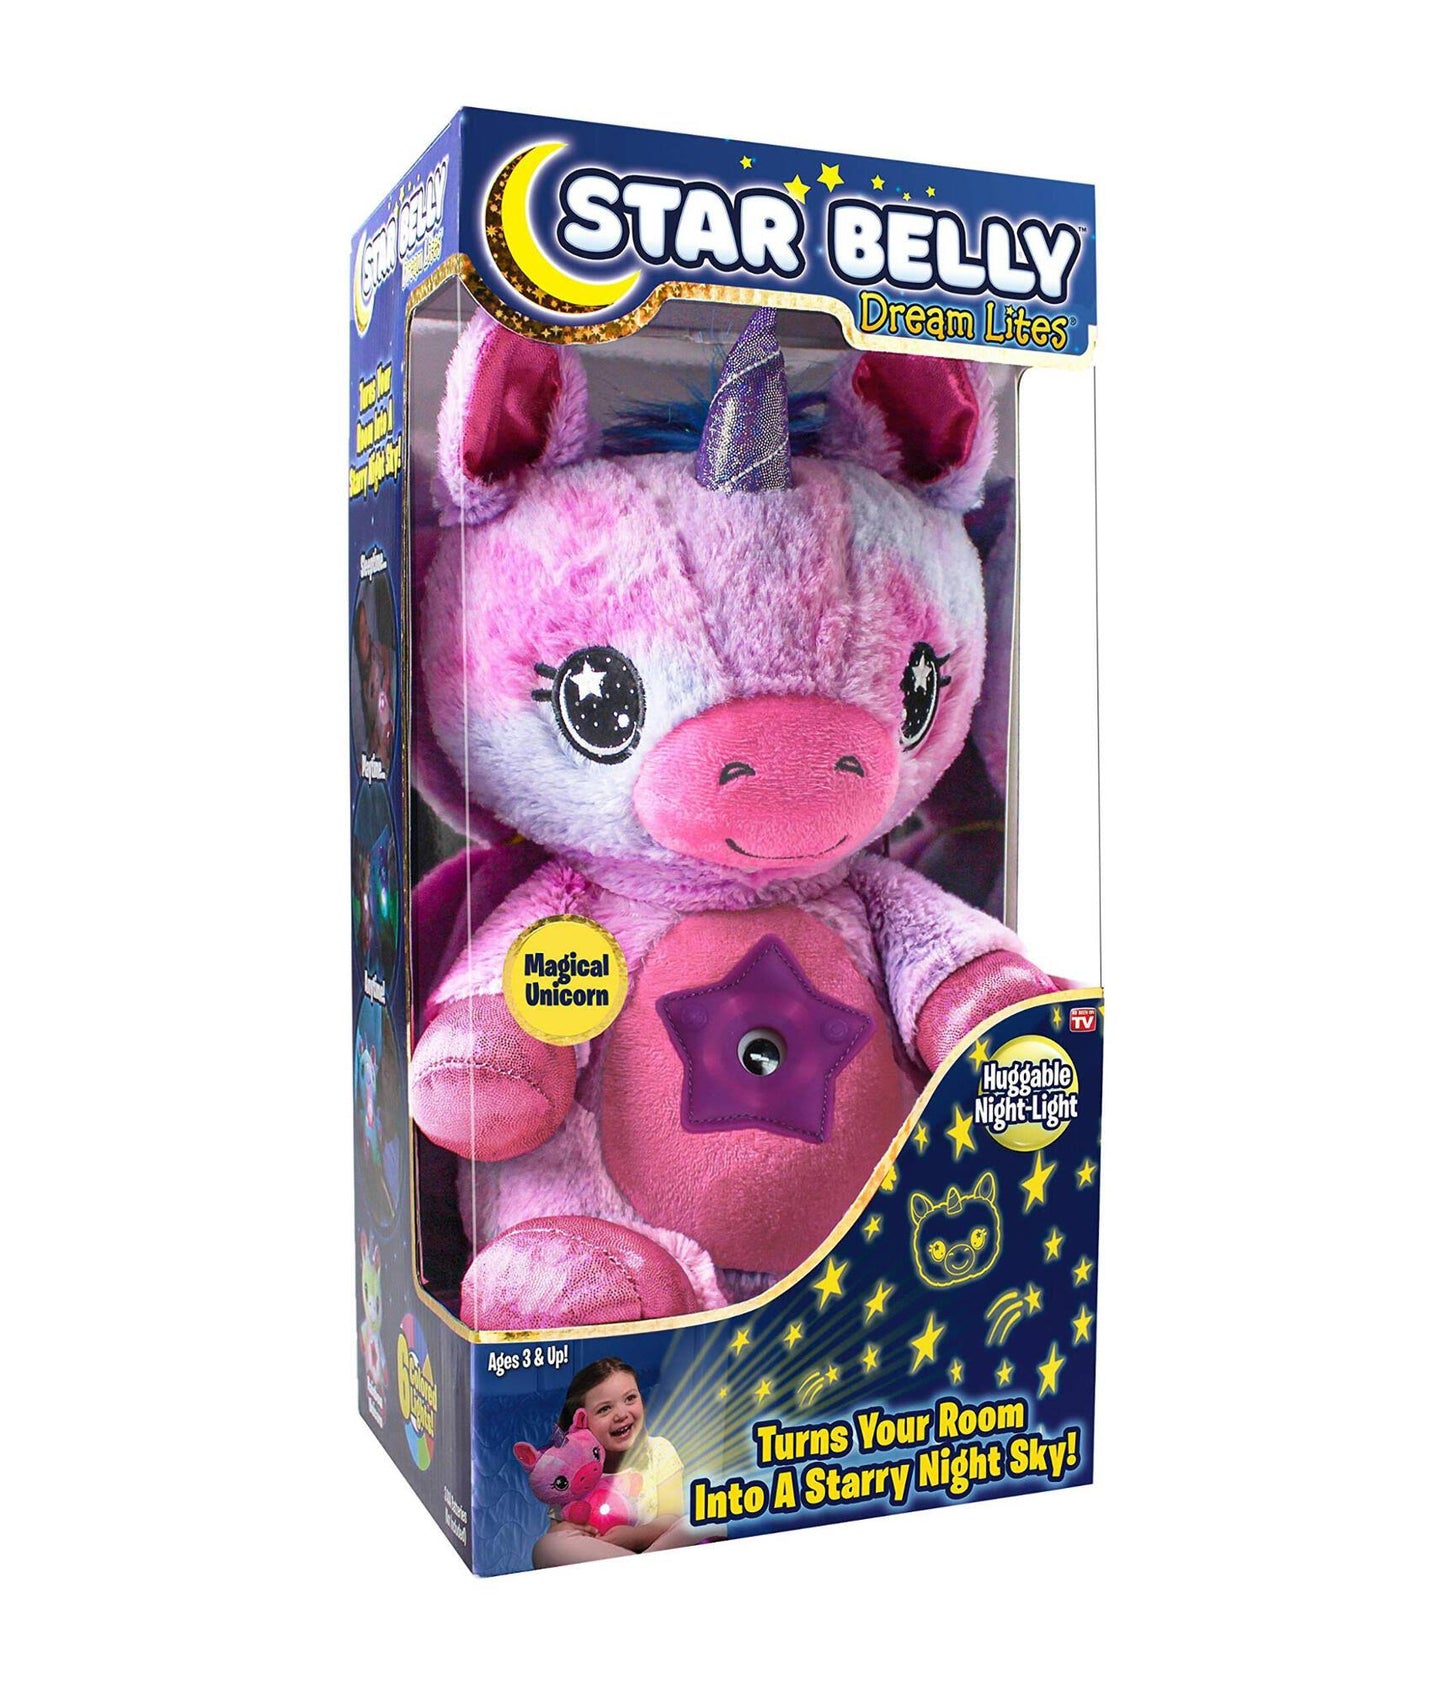 Star Belly